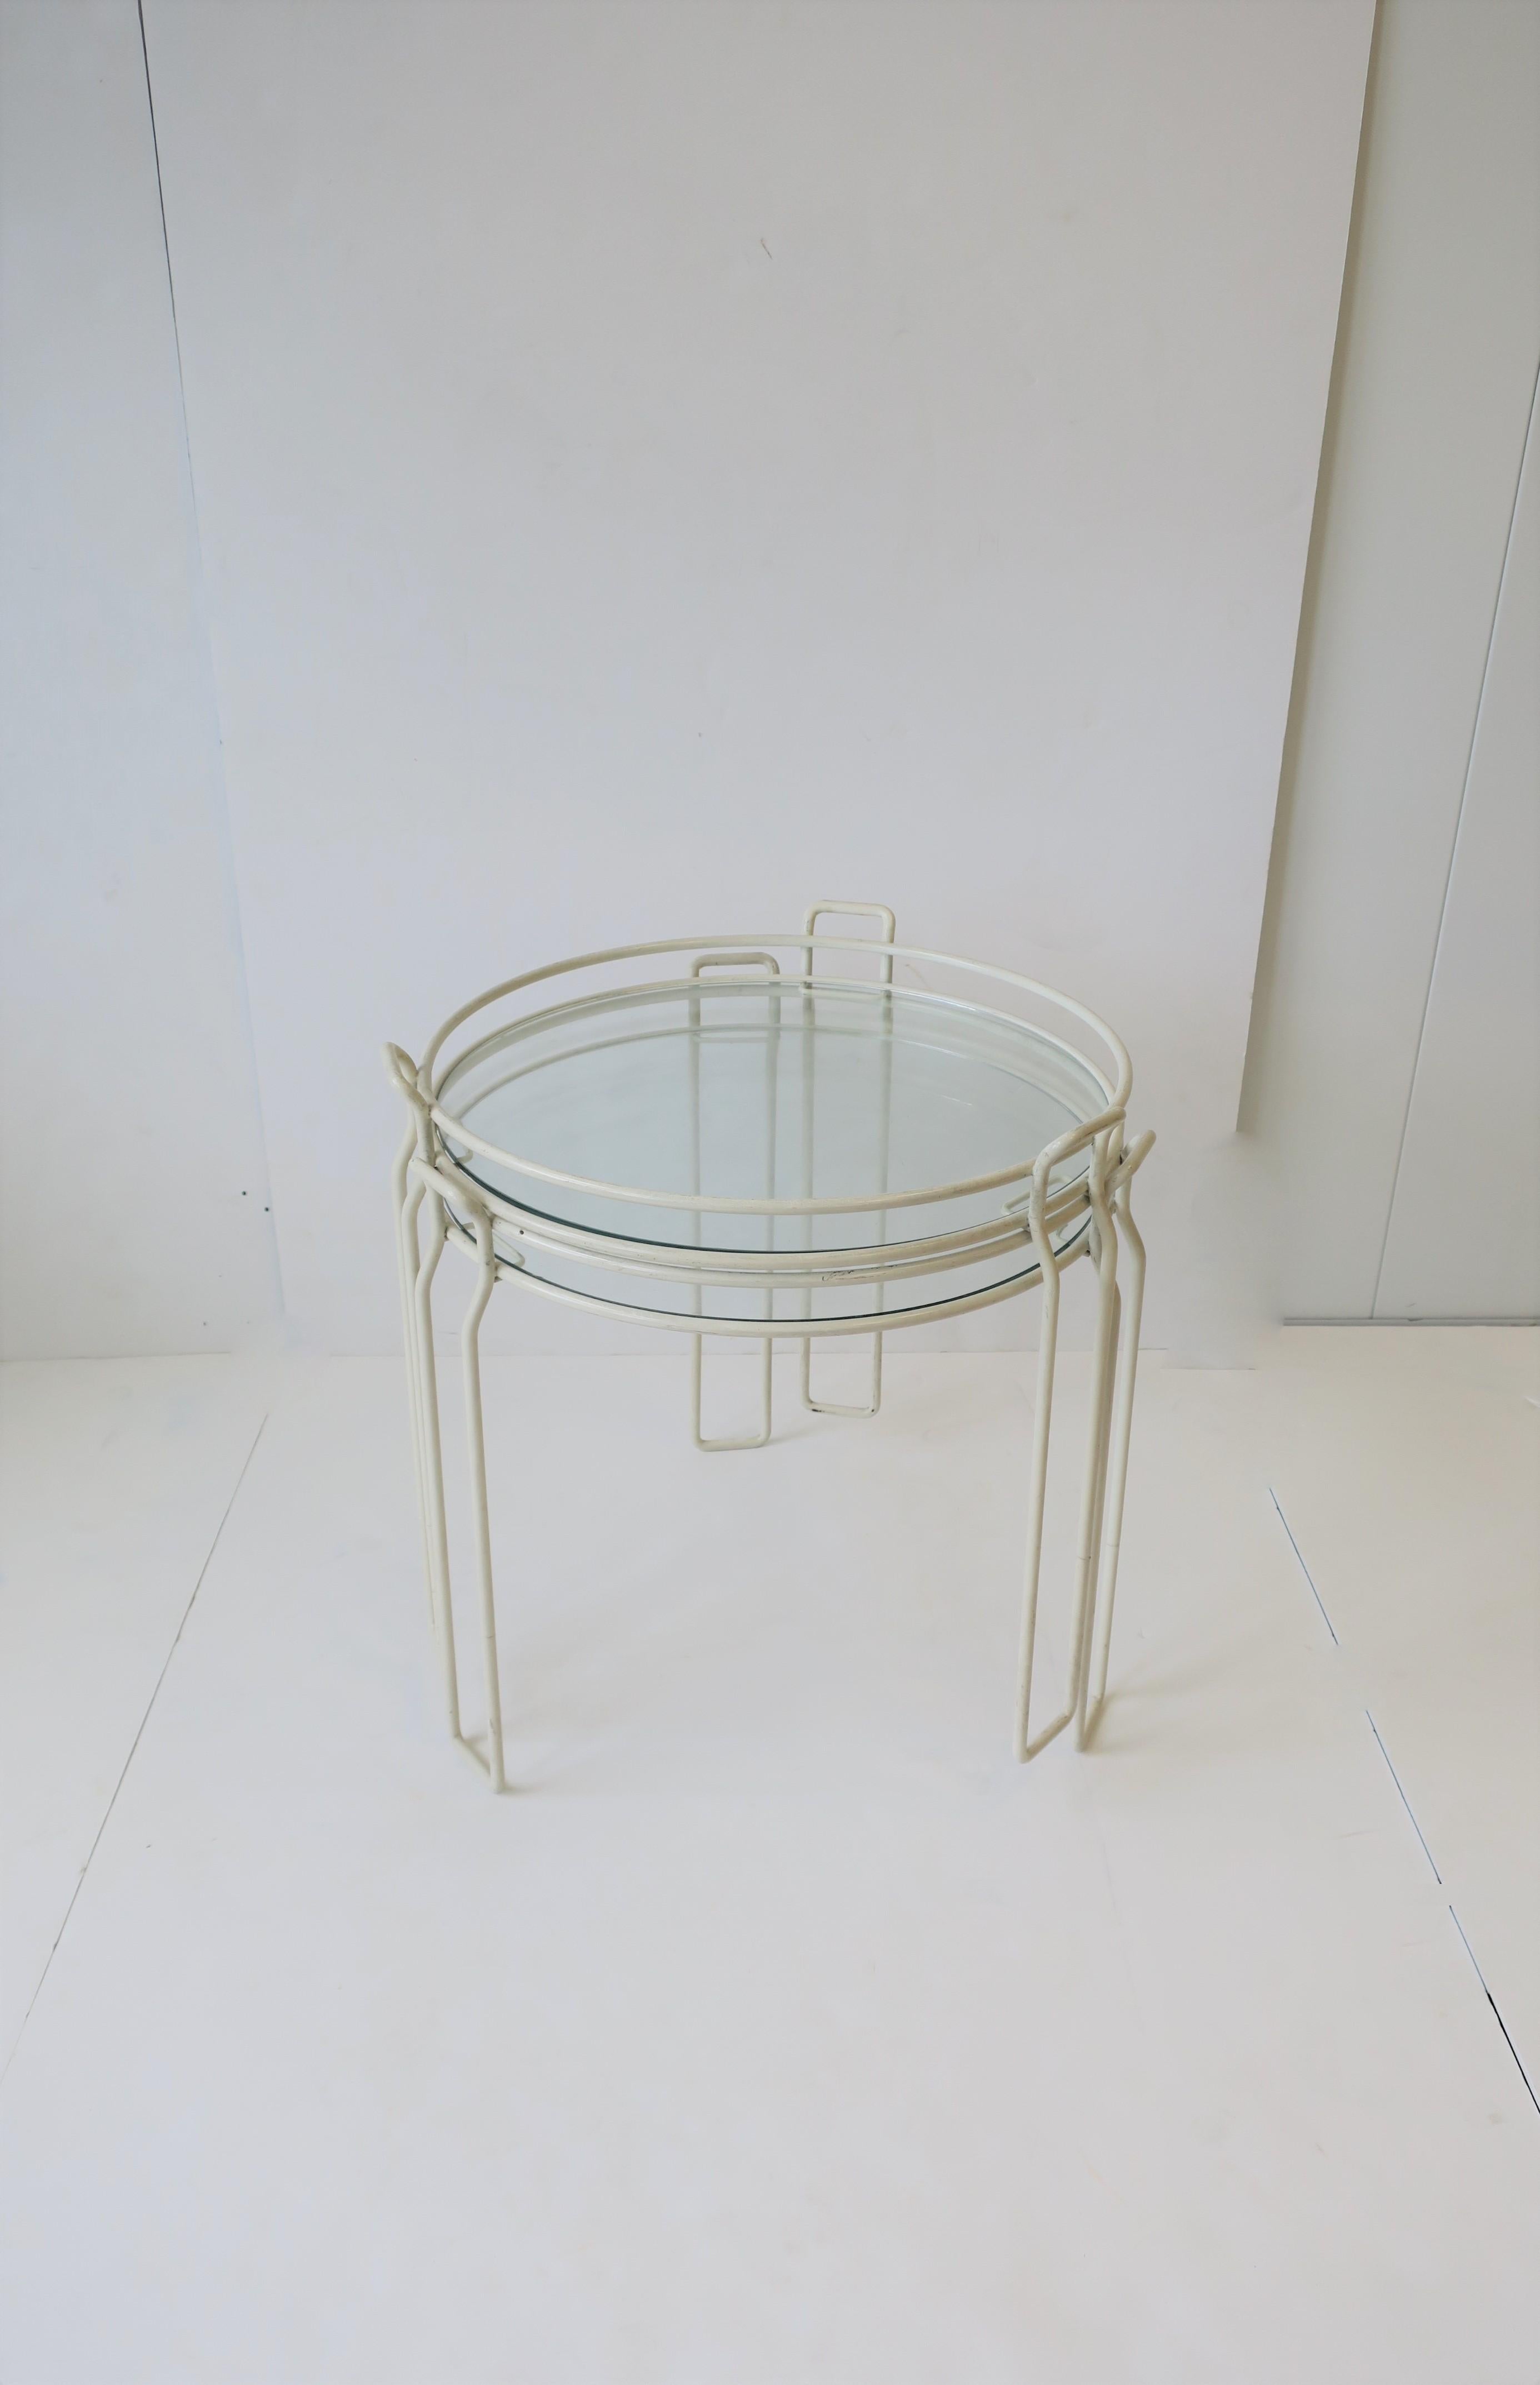 Eine schicke Reihe von zwei (2) Moderne Stil oder Mid-Century Modern Zeitraum Verschachtelung / Stapeln oder Seite Getränke kleine röhrenförmige weiße Tische, circa 1960er Jahre. Die Tische bestehen aus weiß emaillierten Metallrahmen mit runden